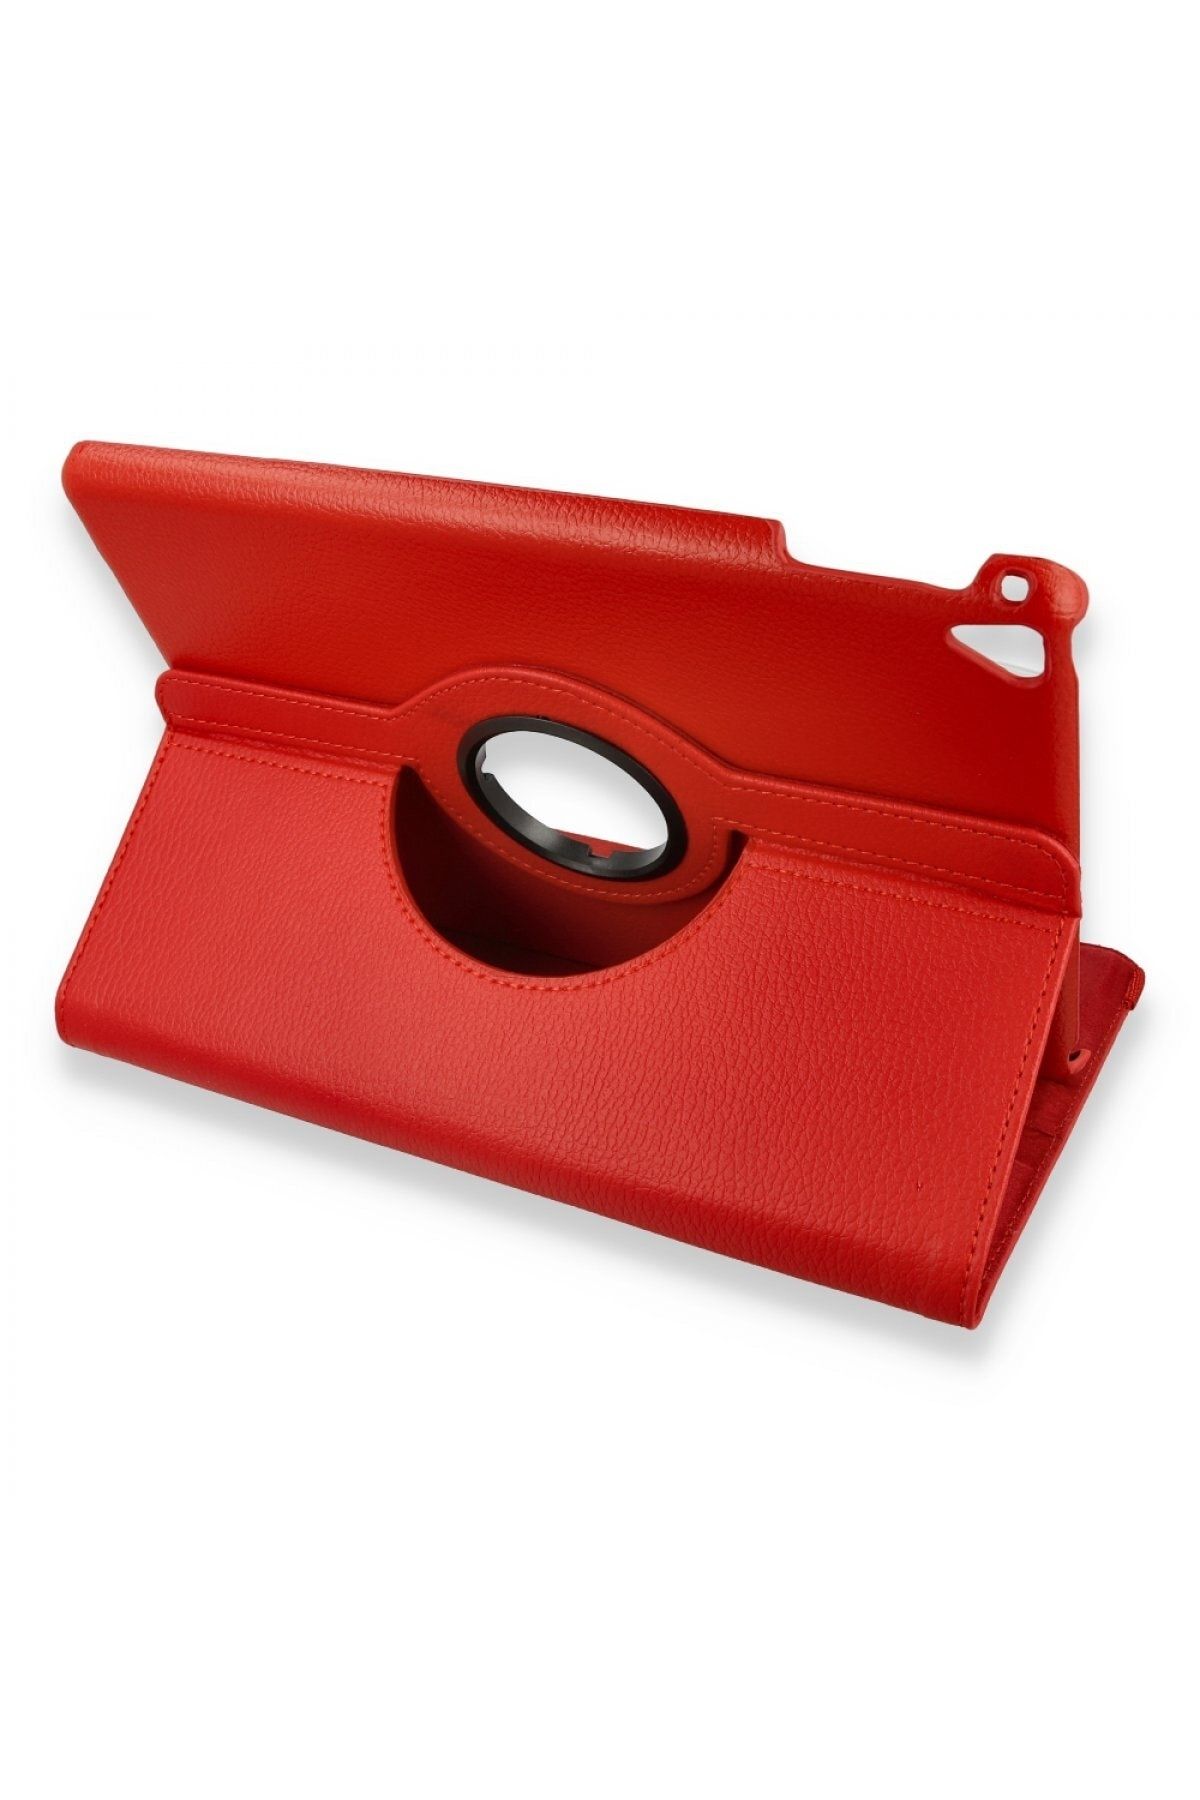 Bilişim Aksesuar Ipad 2 9.7 Kılıf 360 Tablet Deri Kılıf - Kırmızı